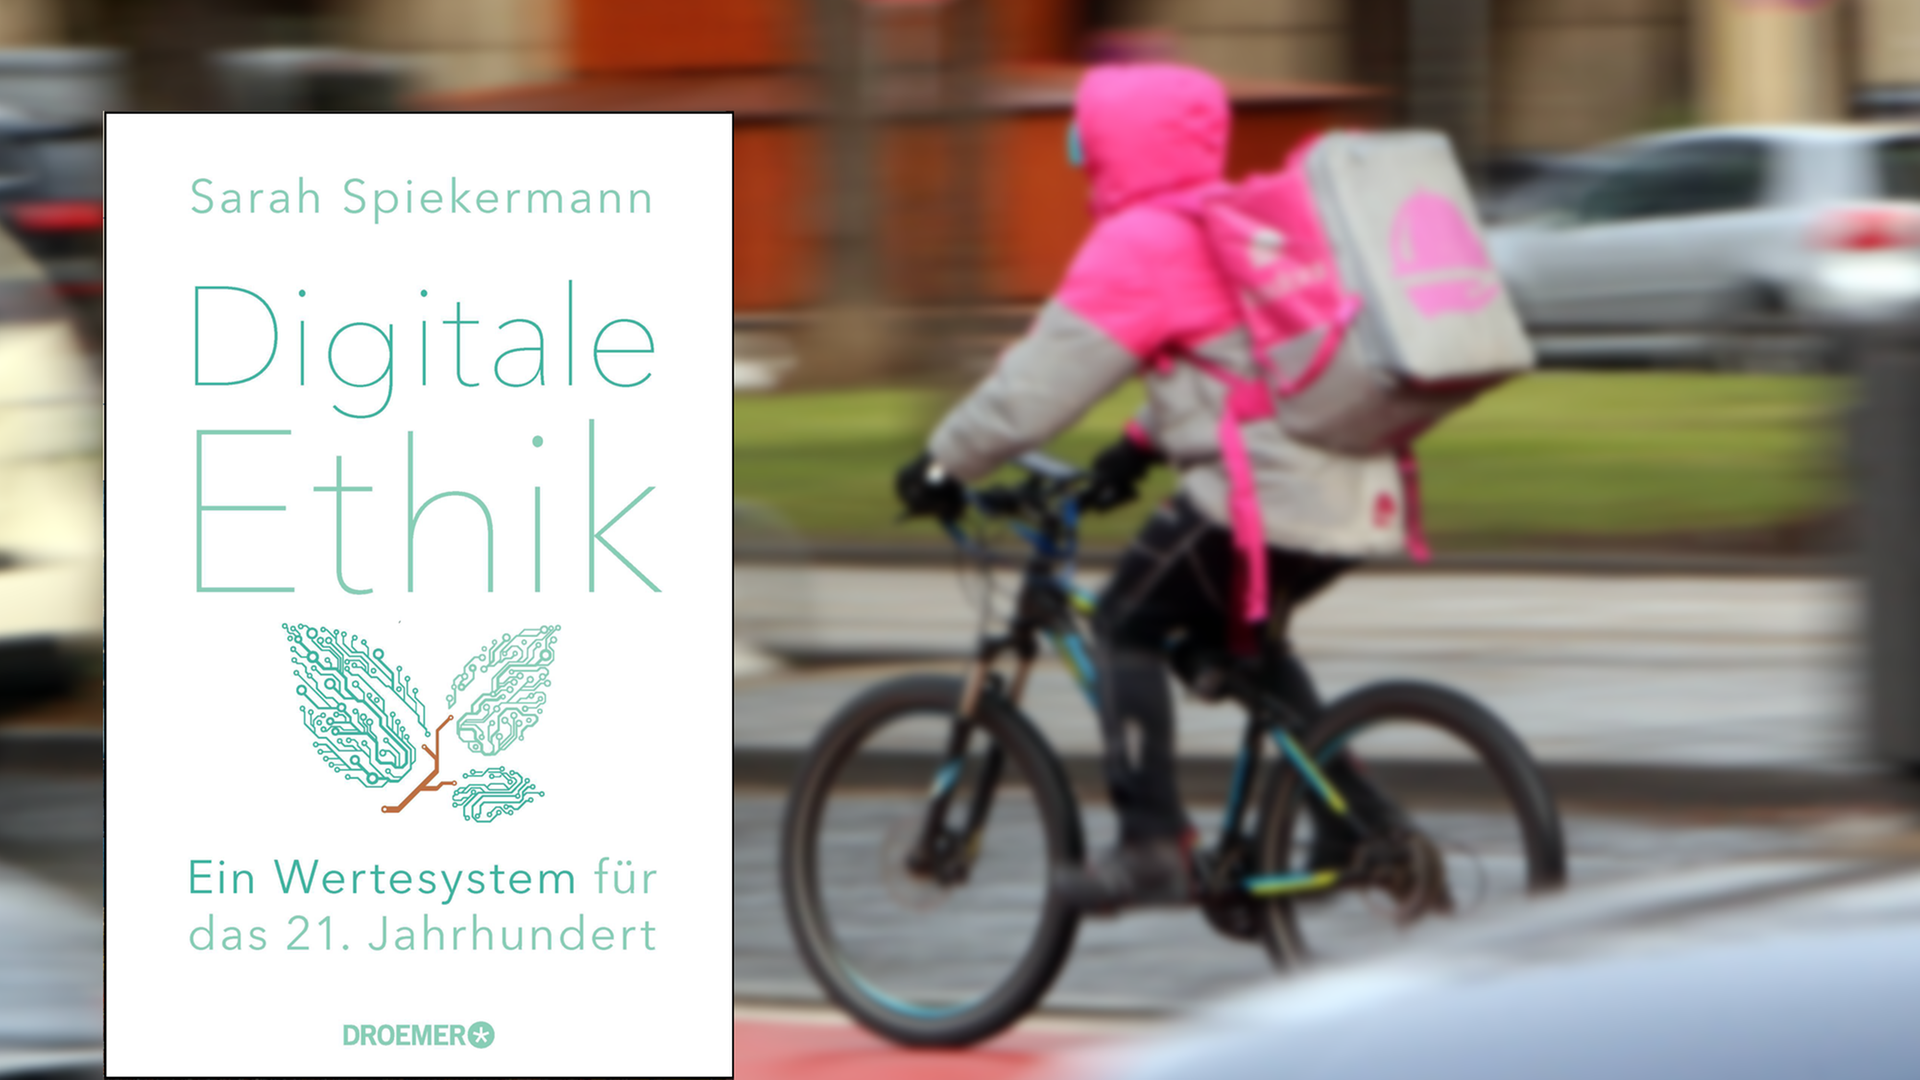 Im Vordergrund ist das Cover des Buches "Digitale Ethnik". Im Hintergrund ist ein Fahrradkurier mit einer Essensbox auf dem Rücken zu sehen, der durch eine Stadt fährt.